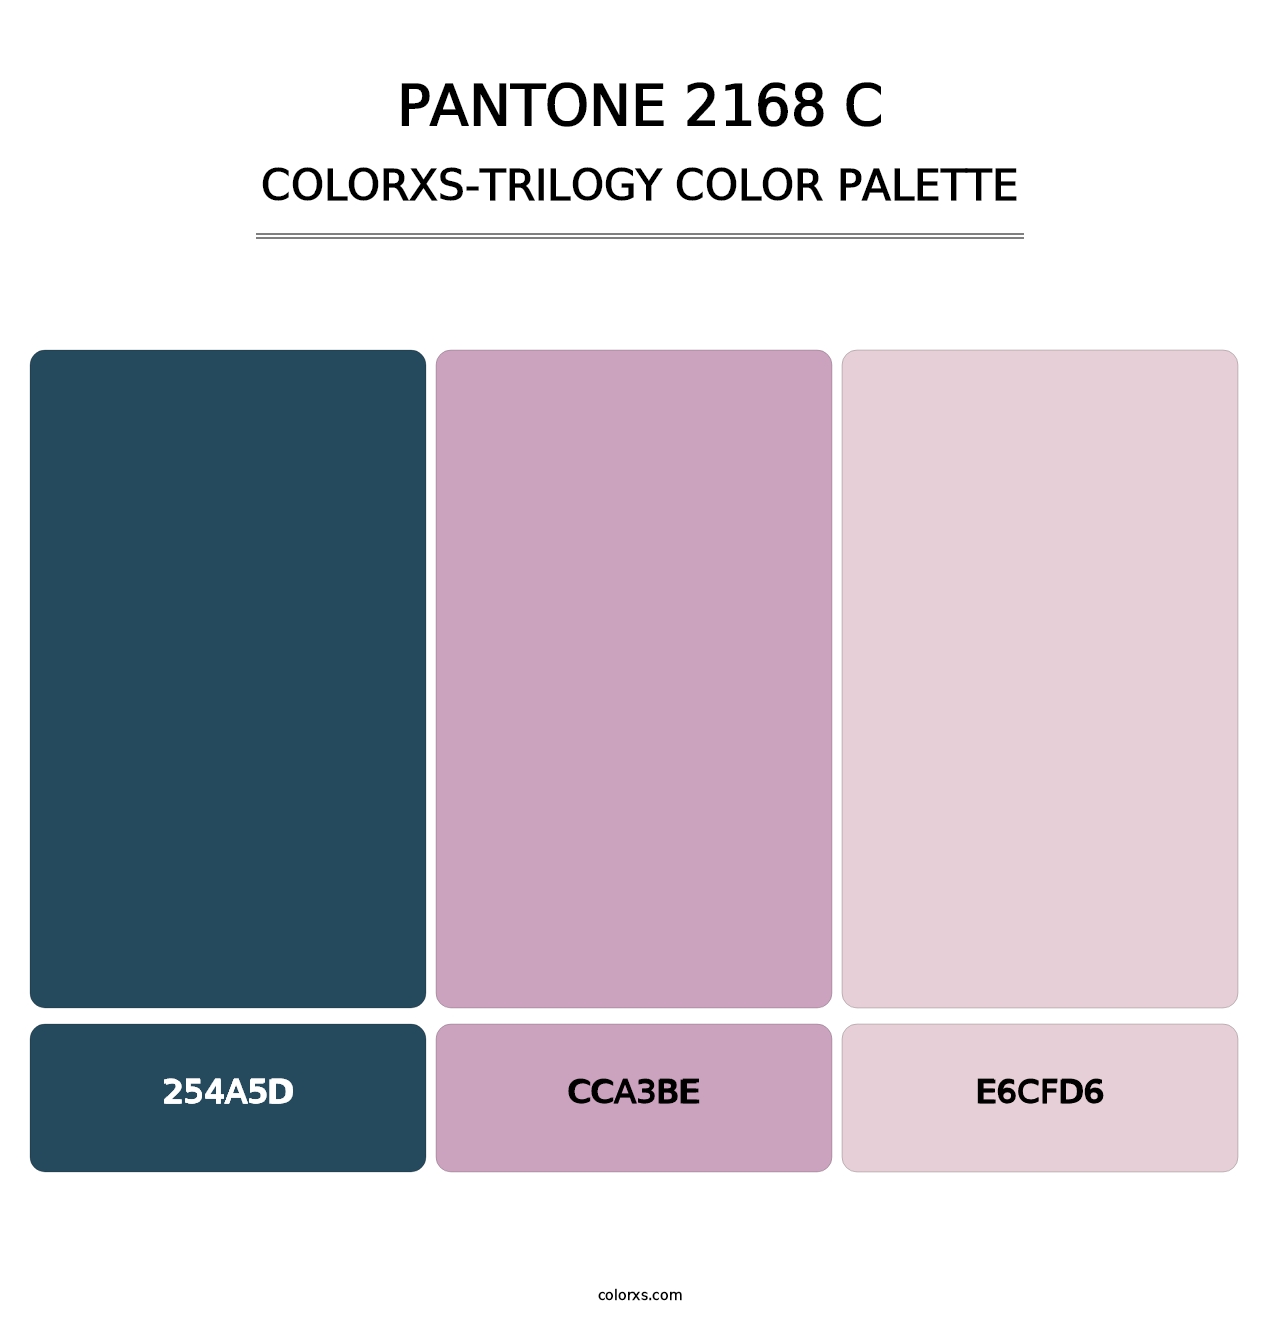 PANTONE 2168 C - Colorxs Trilogy Palette